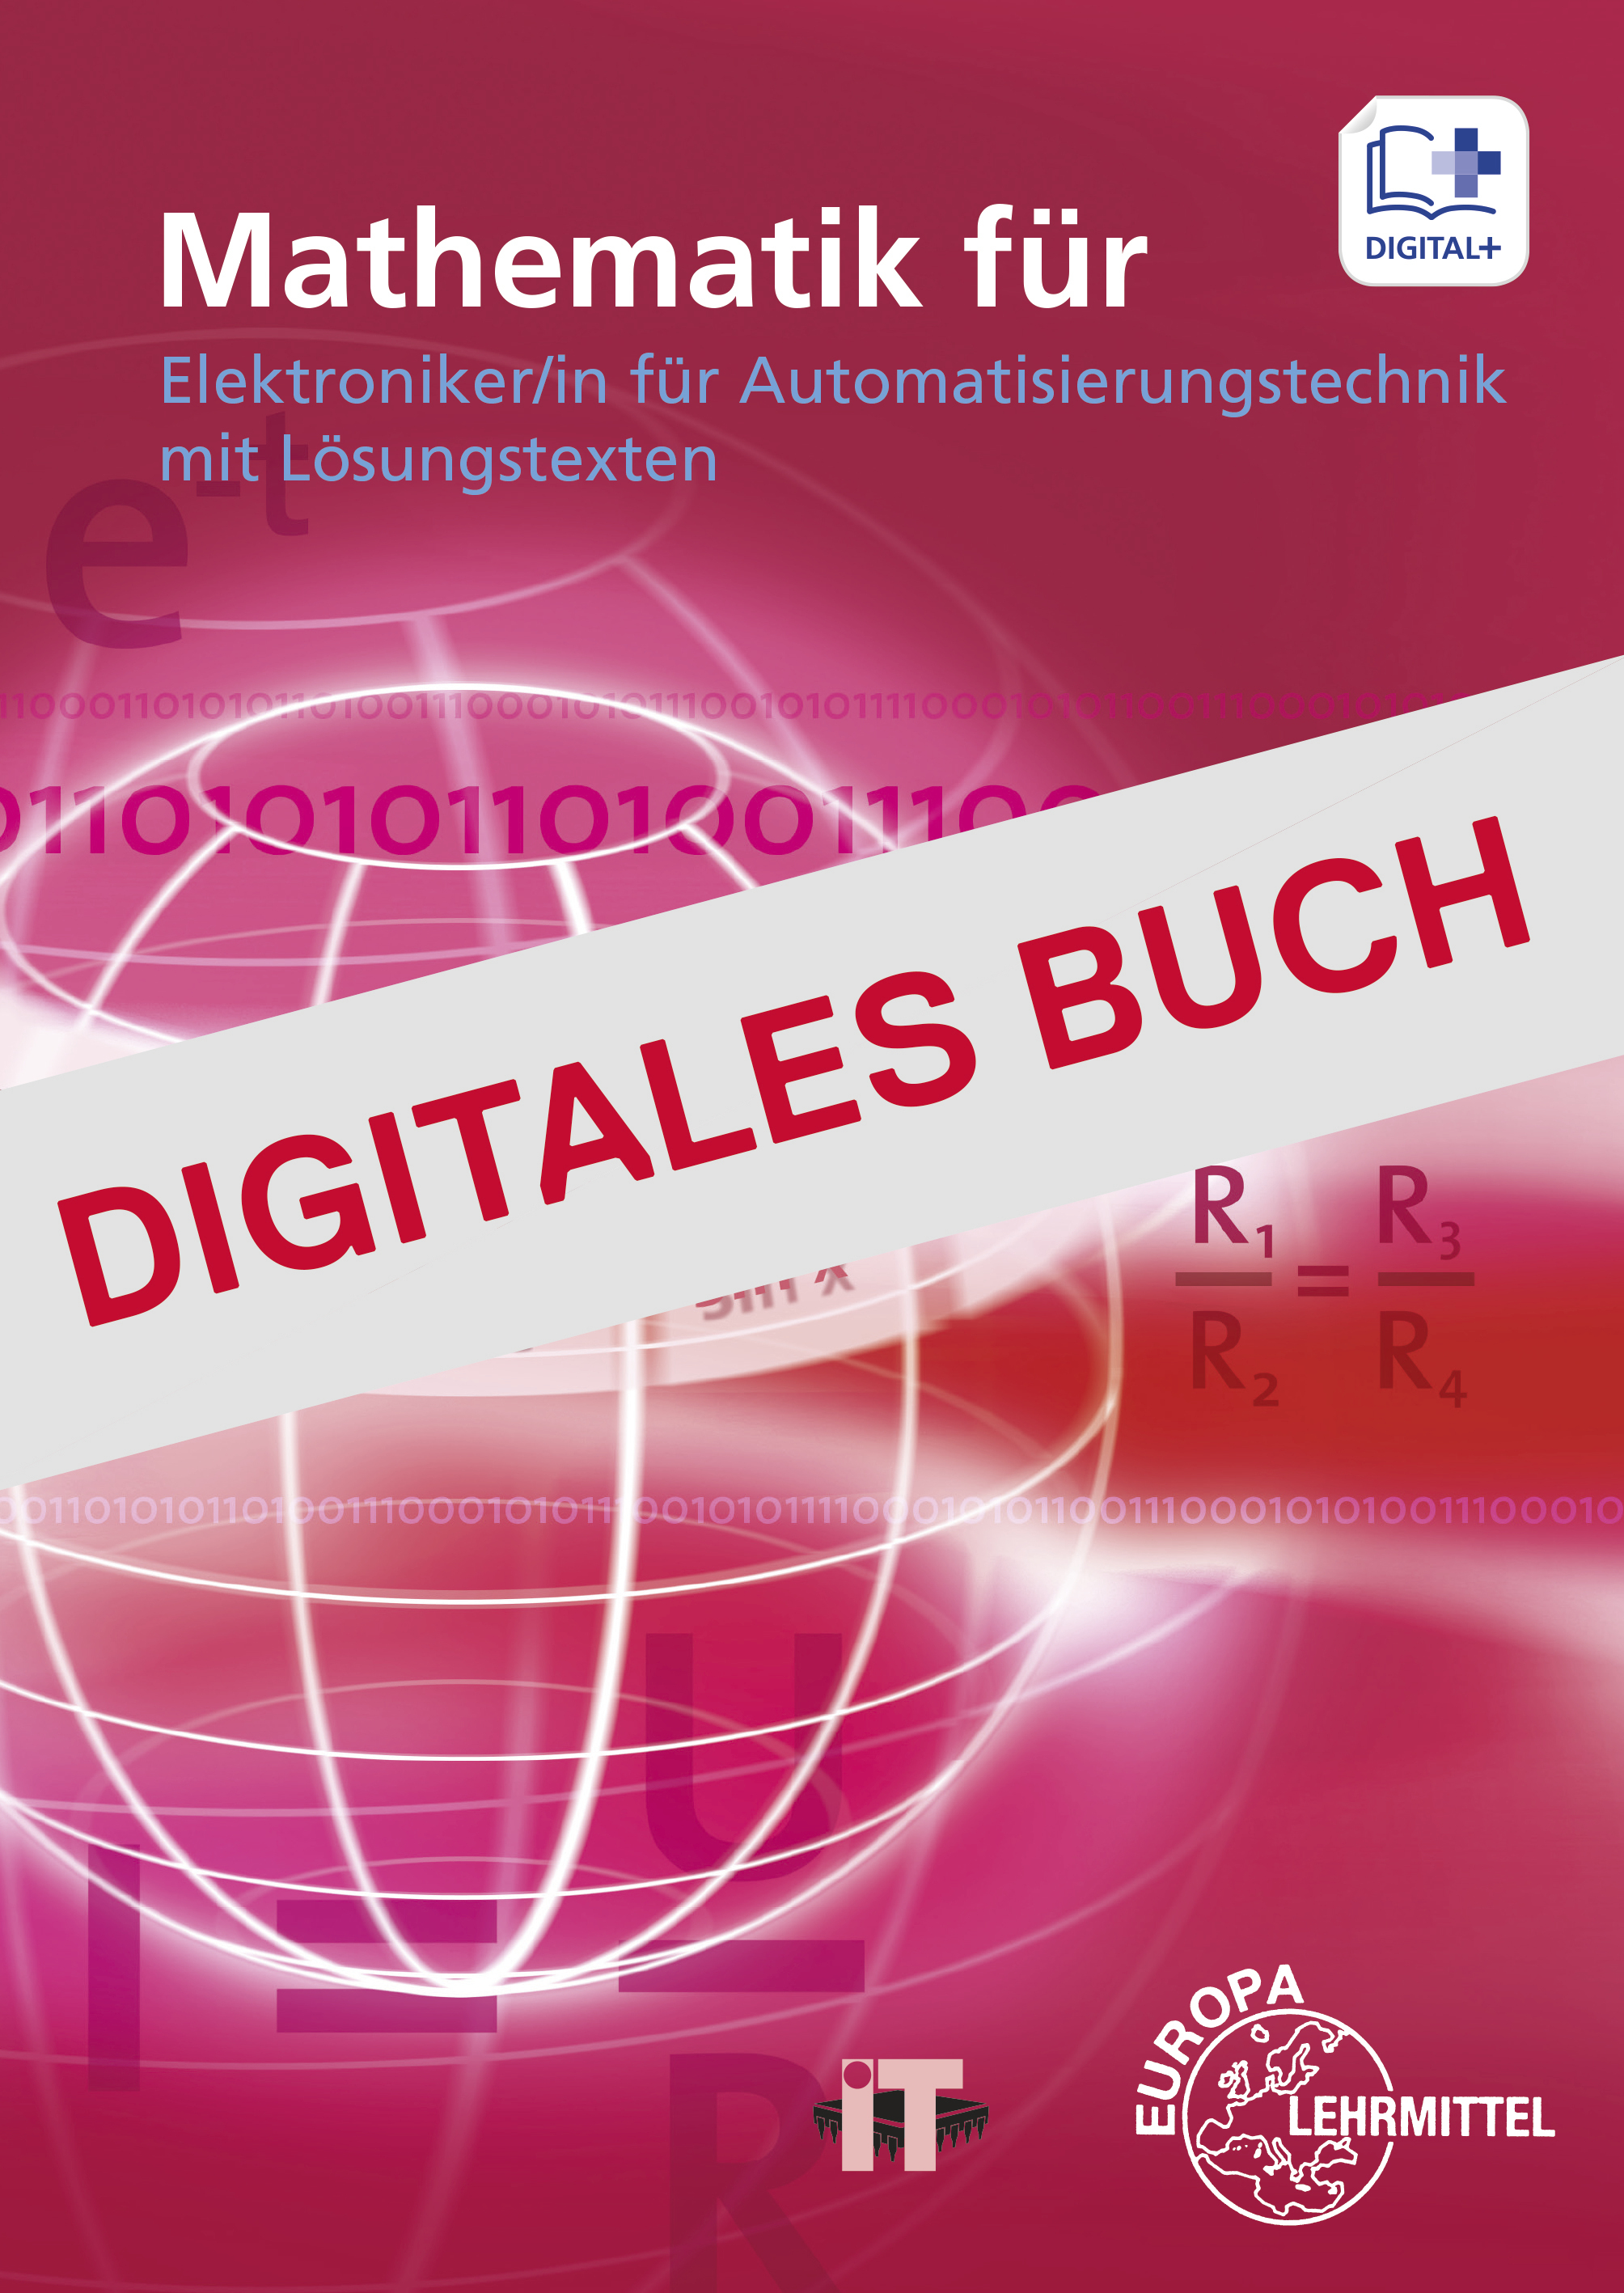 Mathematik für Elektroniker/in für Automatisierungstechnik - Digitales Buch